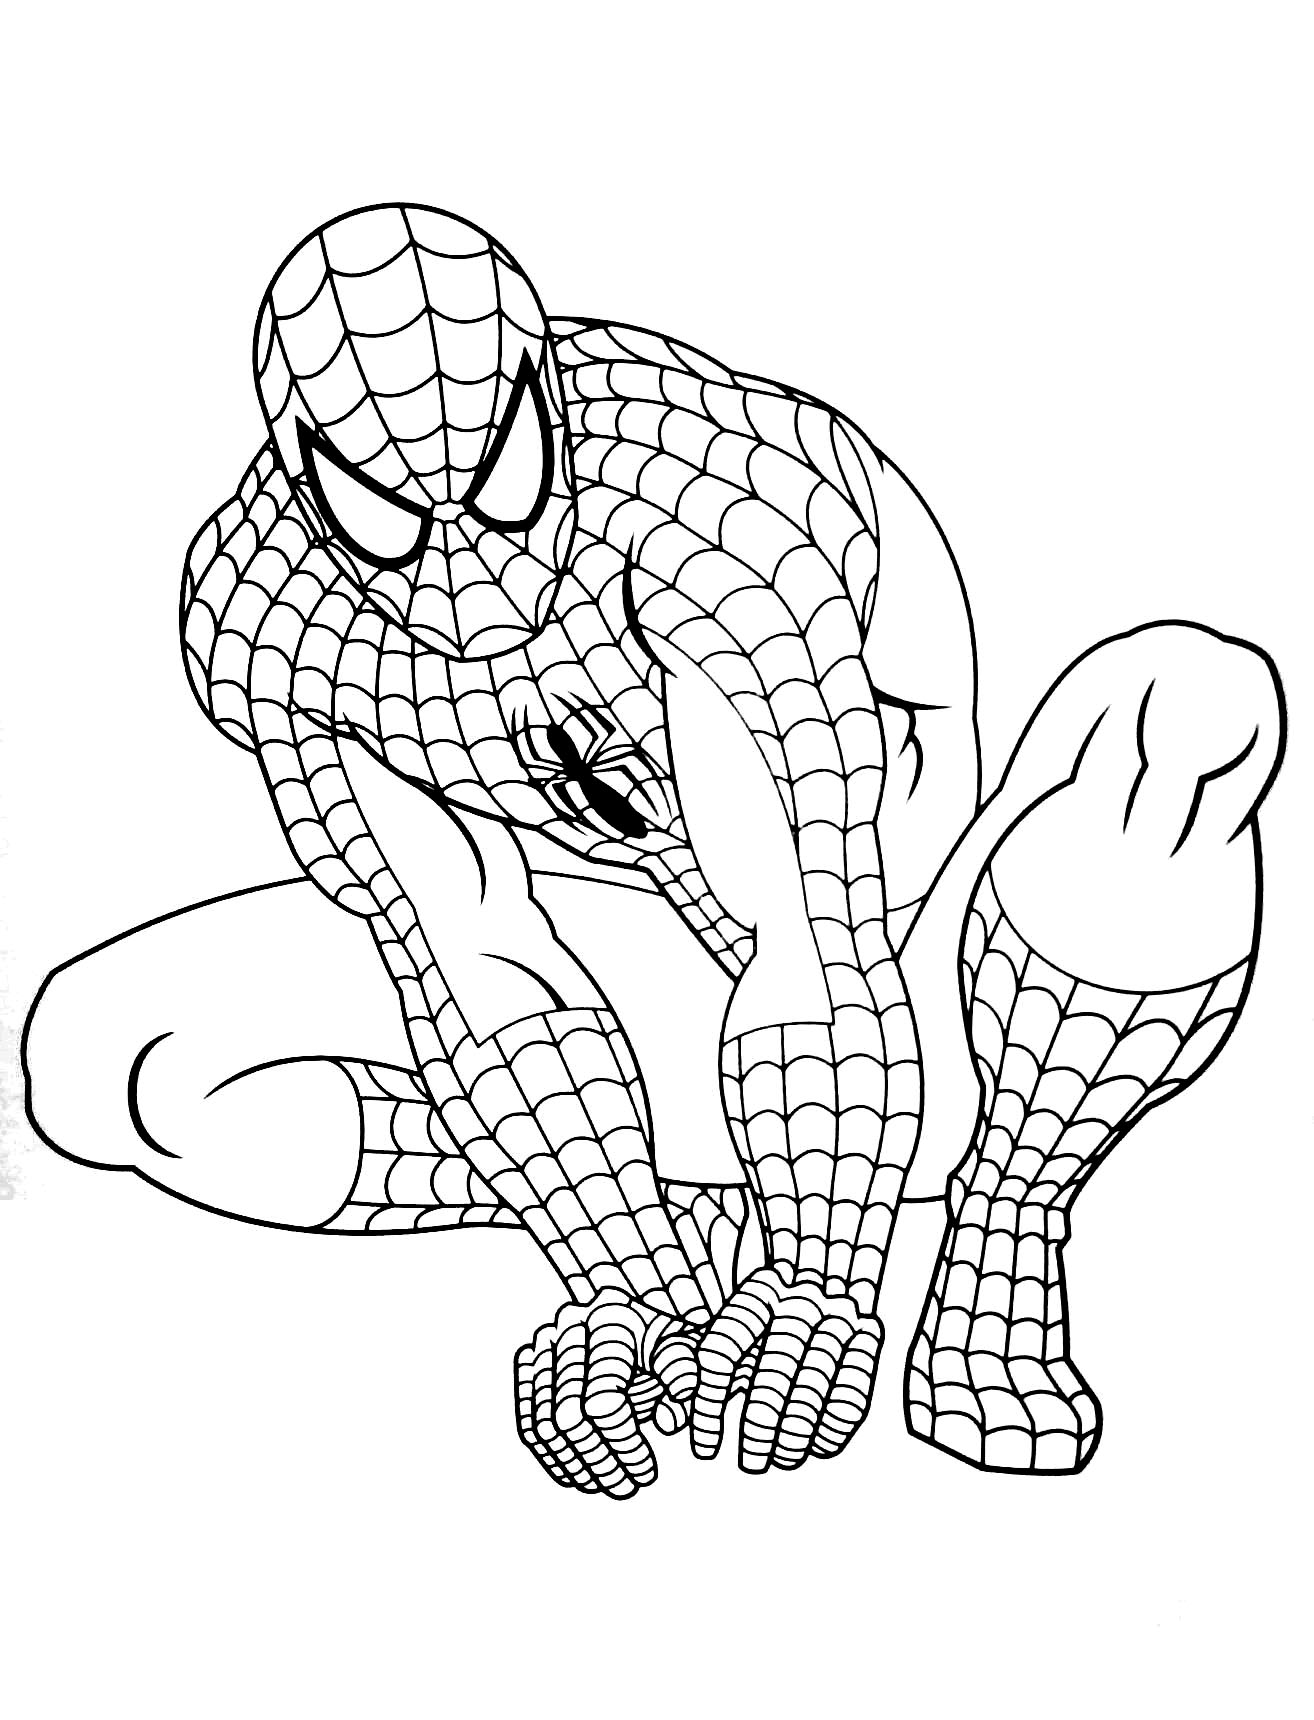 Tranh tô màu siêu anh hùng Spider Man